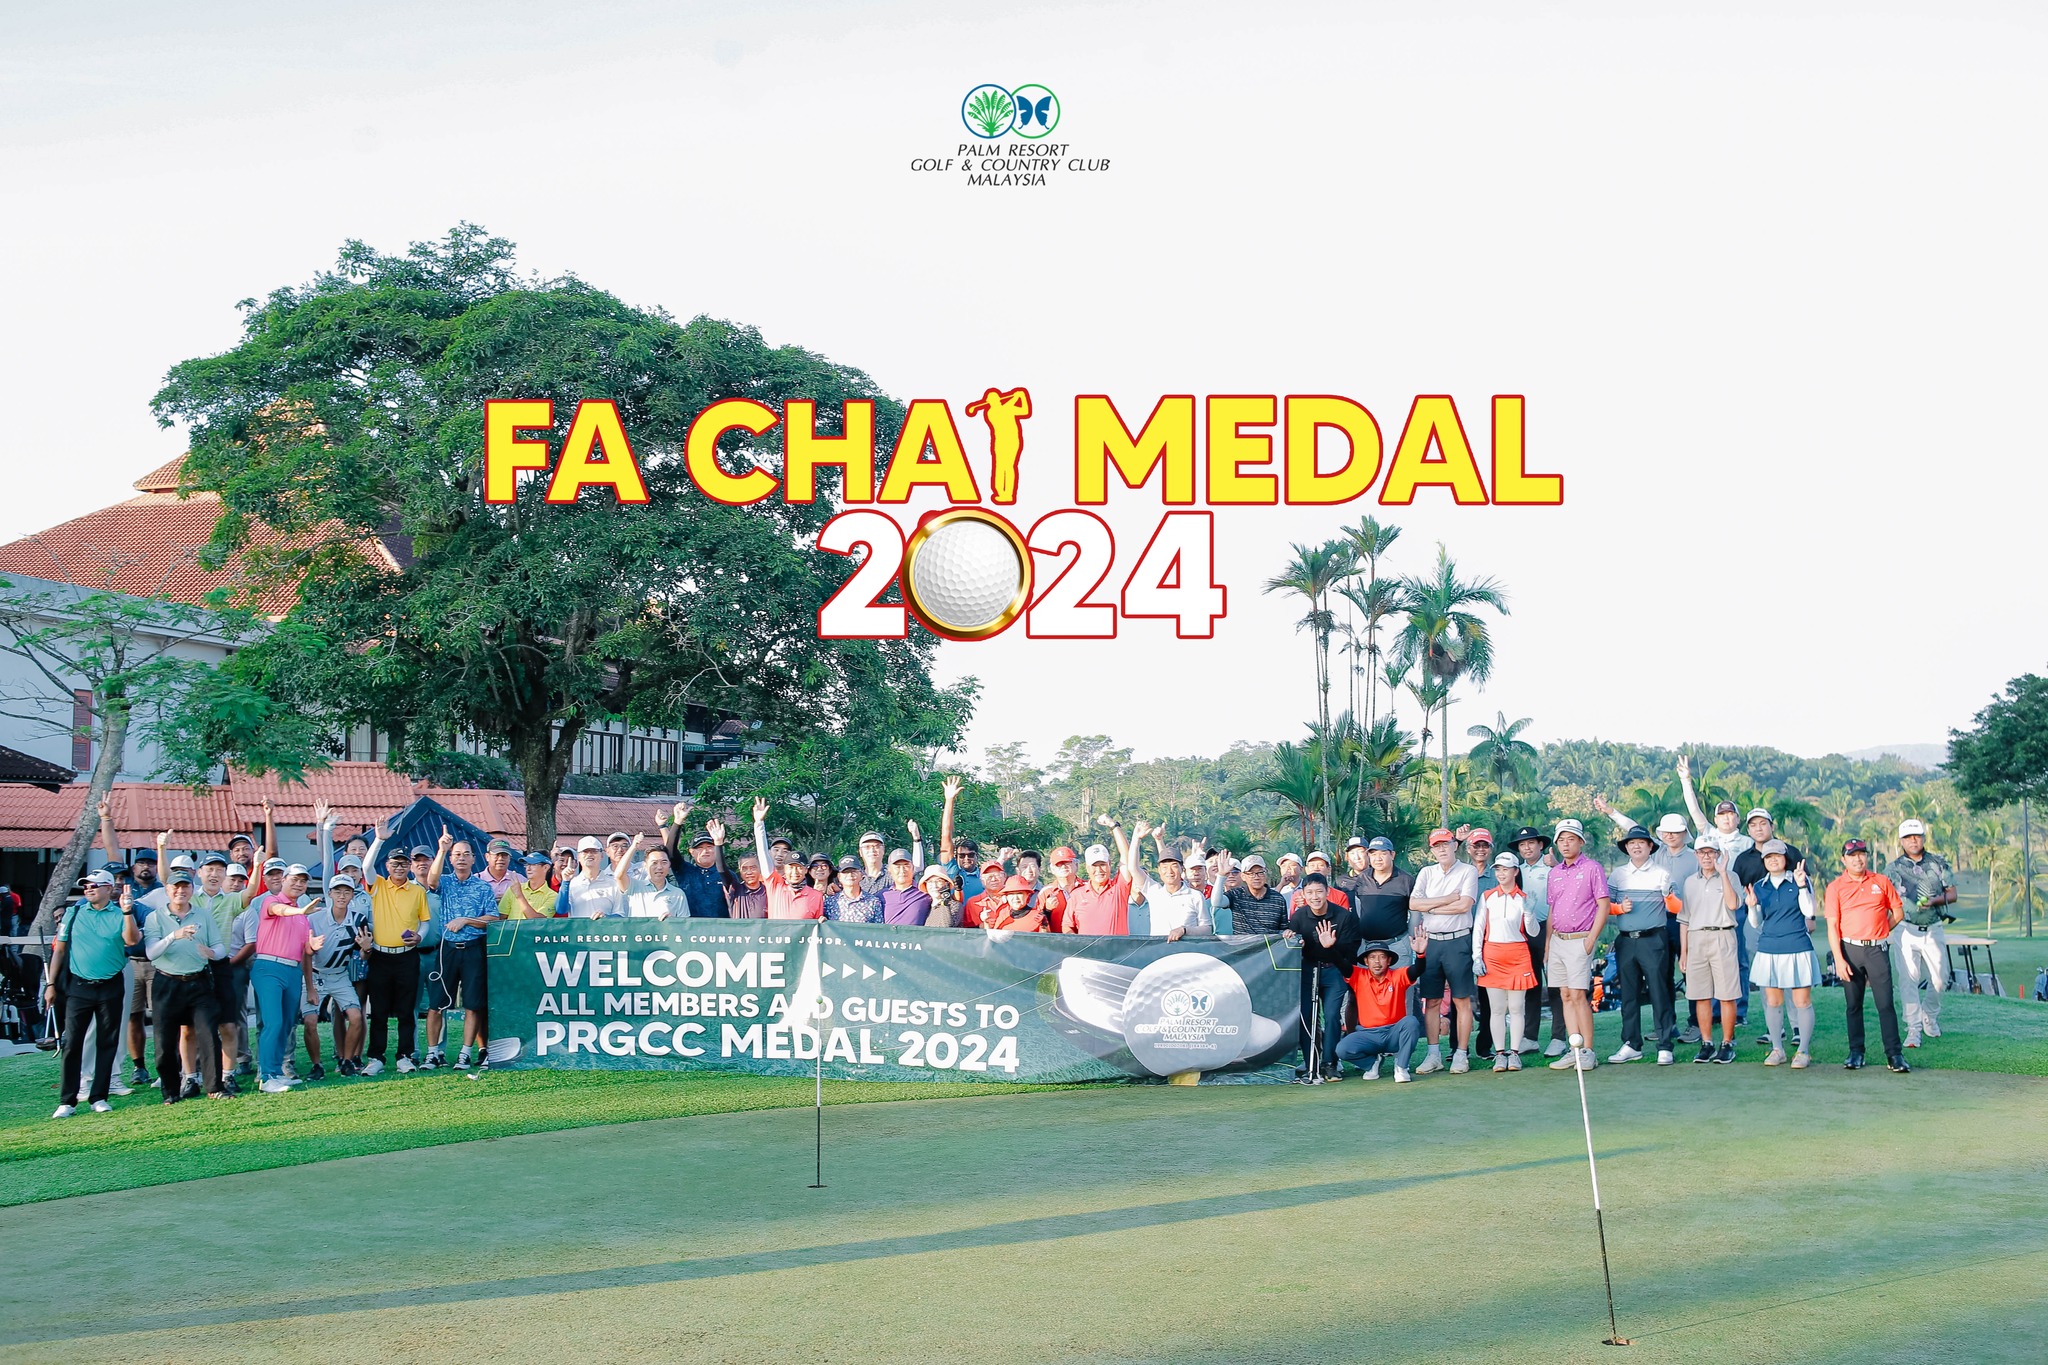 Fa Chai medal 2024